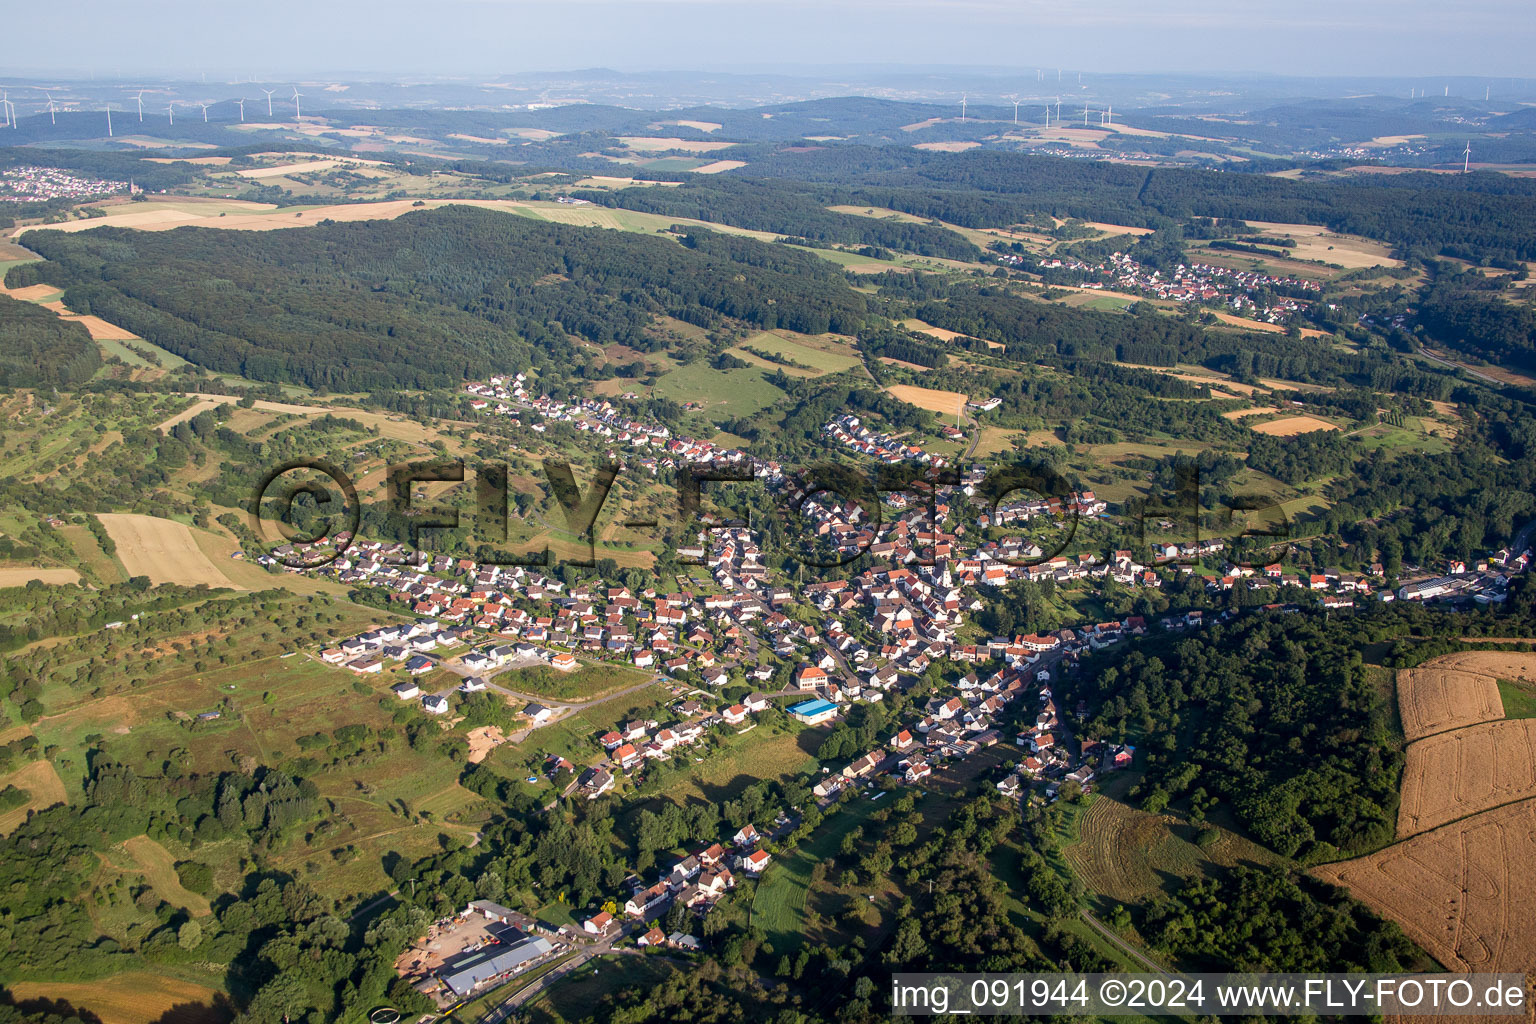 Vue aérienne de Champs agricoles et surfaces utilisables à Dittweiler dans le département Rhénanie-Palatinat, Allemagne